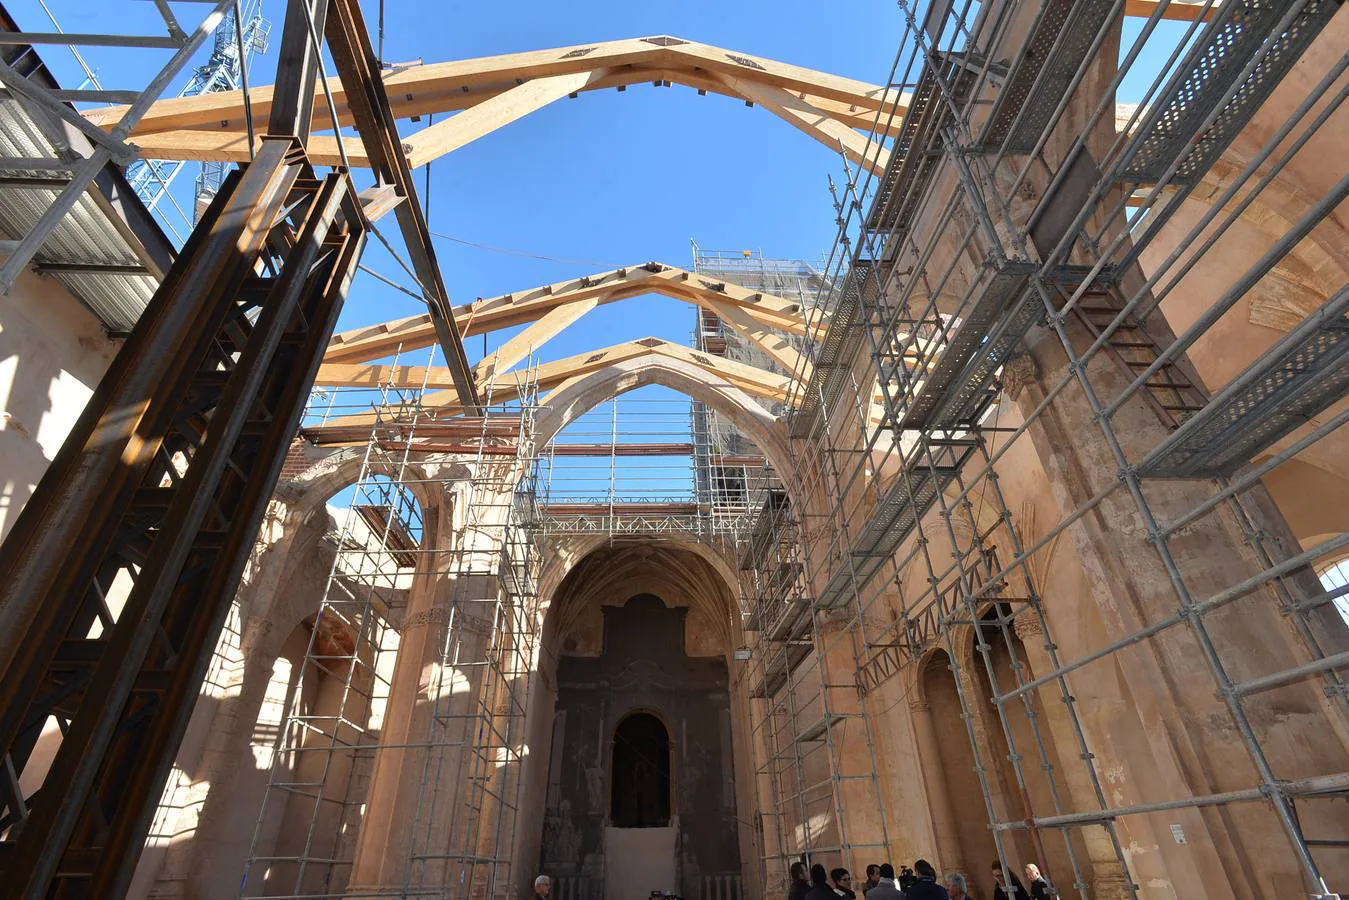 La iglesia de Santa María de Lorca, aún en su estado actual, «es una auténtica belleza». El alcalde, Fulgencio Gil Jódar, no pudo ayer evitar maravillarse al contemplar el monumento, que se encuentra en el ecuador de las obras de rehabilitación